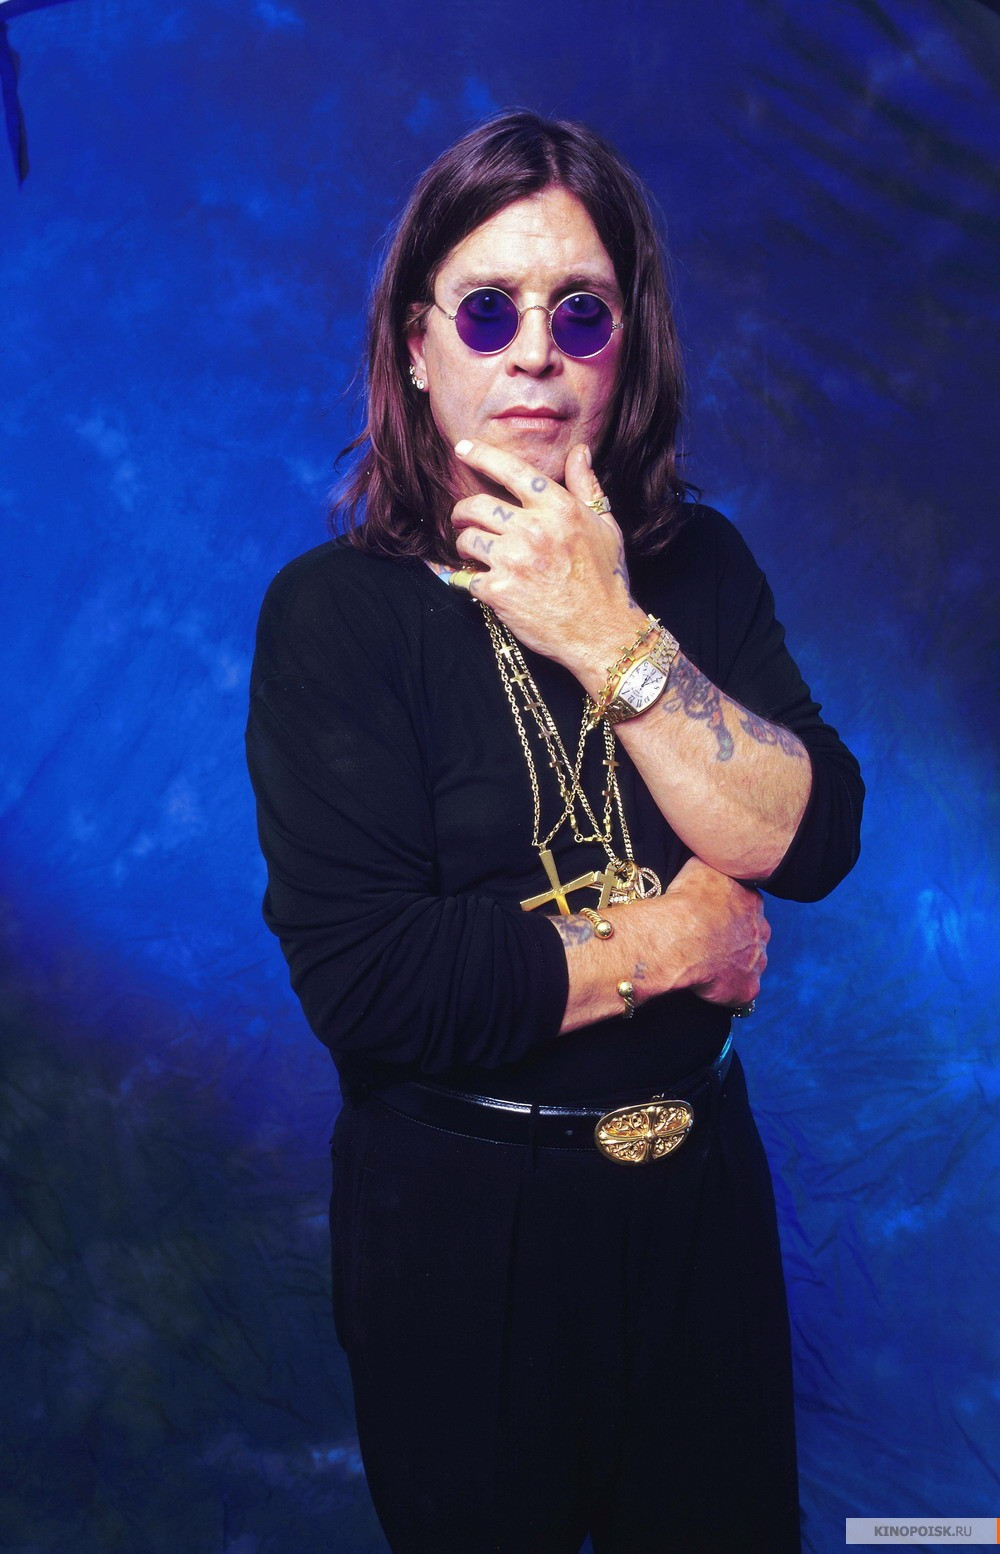 Ози Озборн (Ozzy Osbourne)